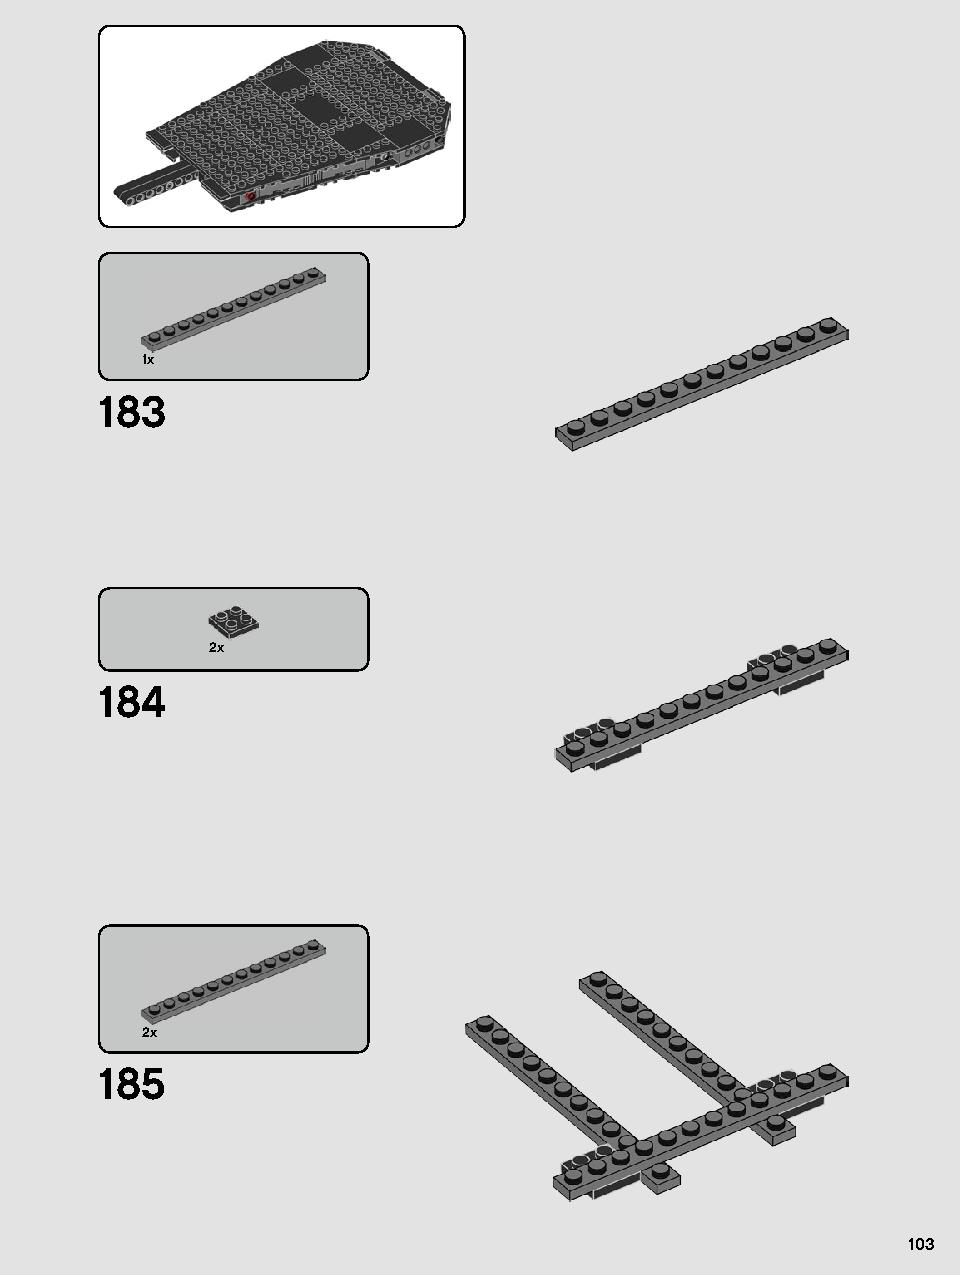 스타워즈 카일로 렌의 셔틀™ 75256 레고 세트 제품정보 레고 조립설명서 103 page